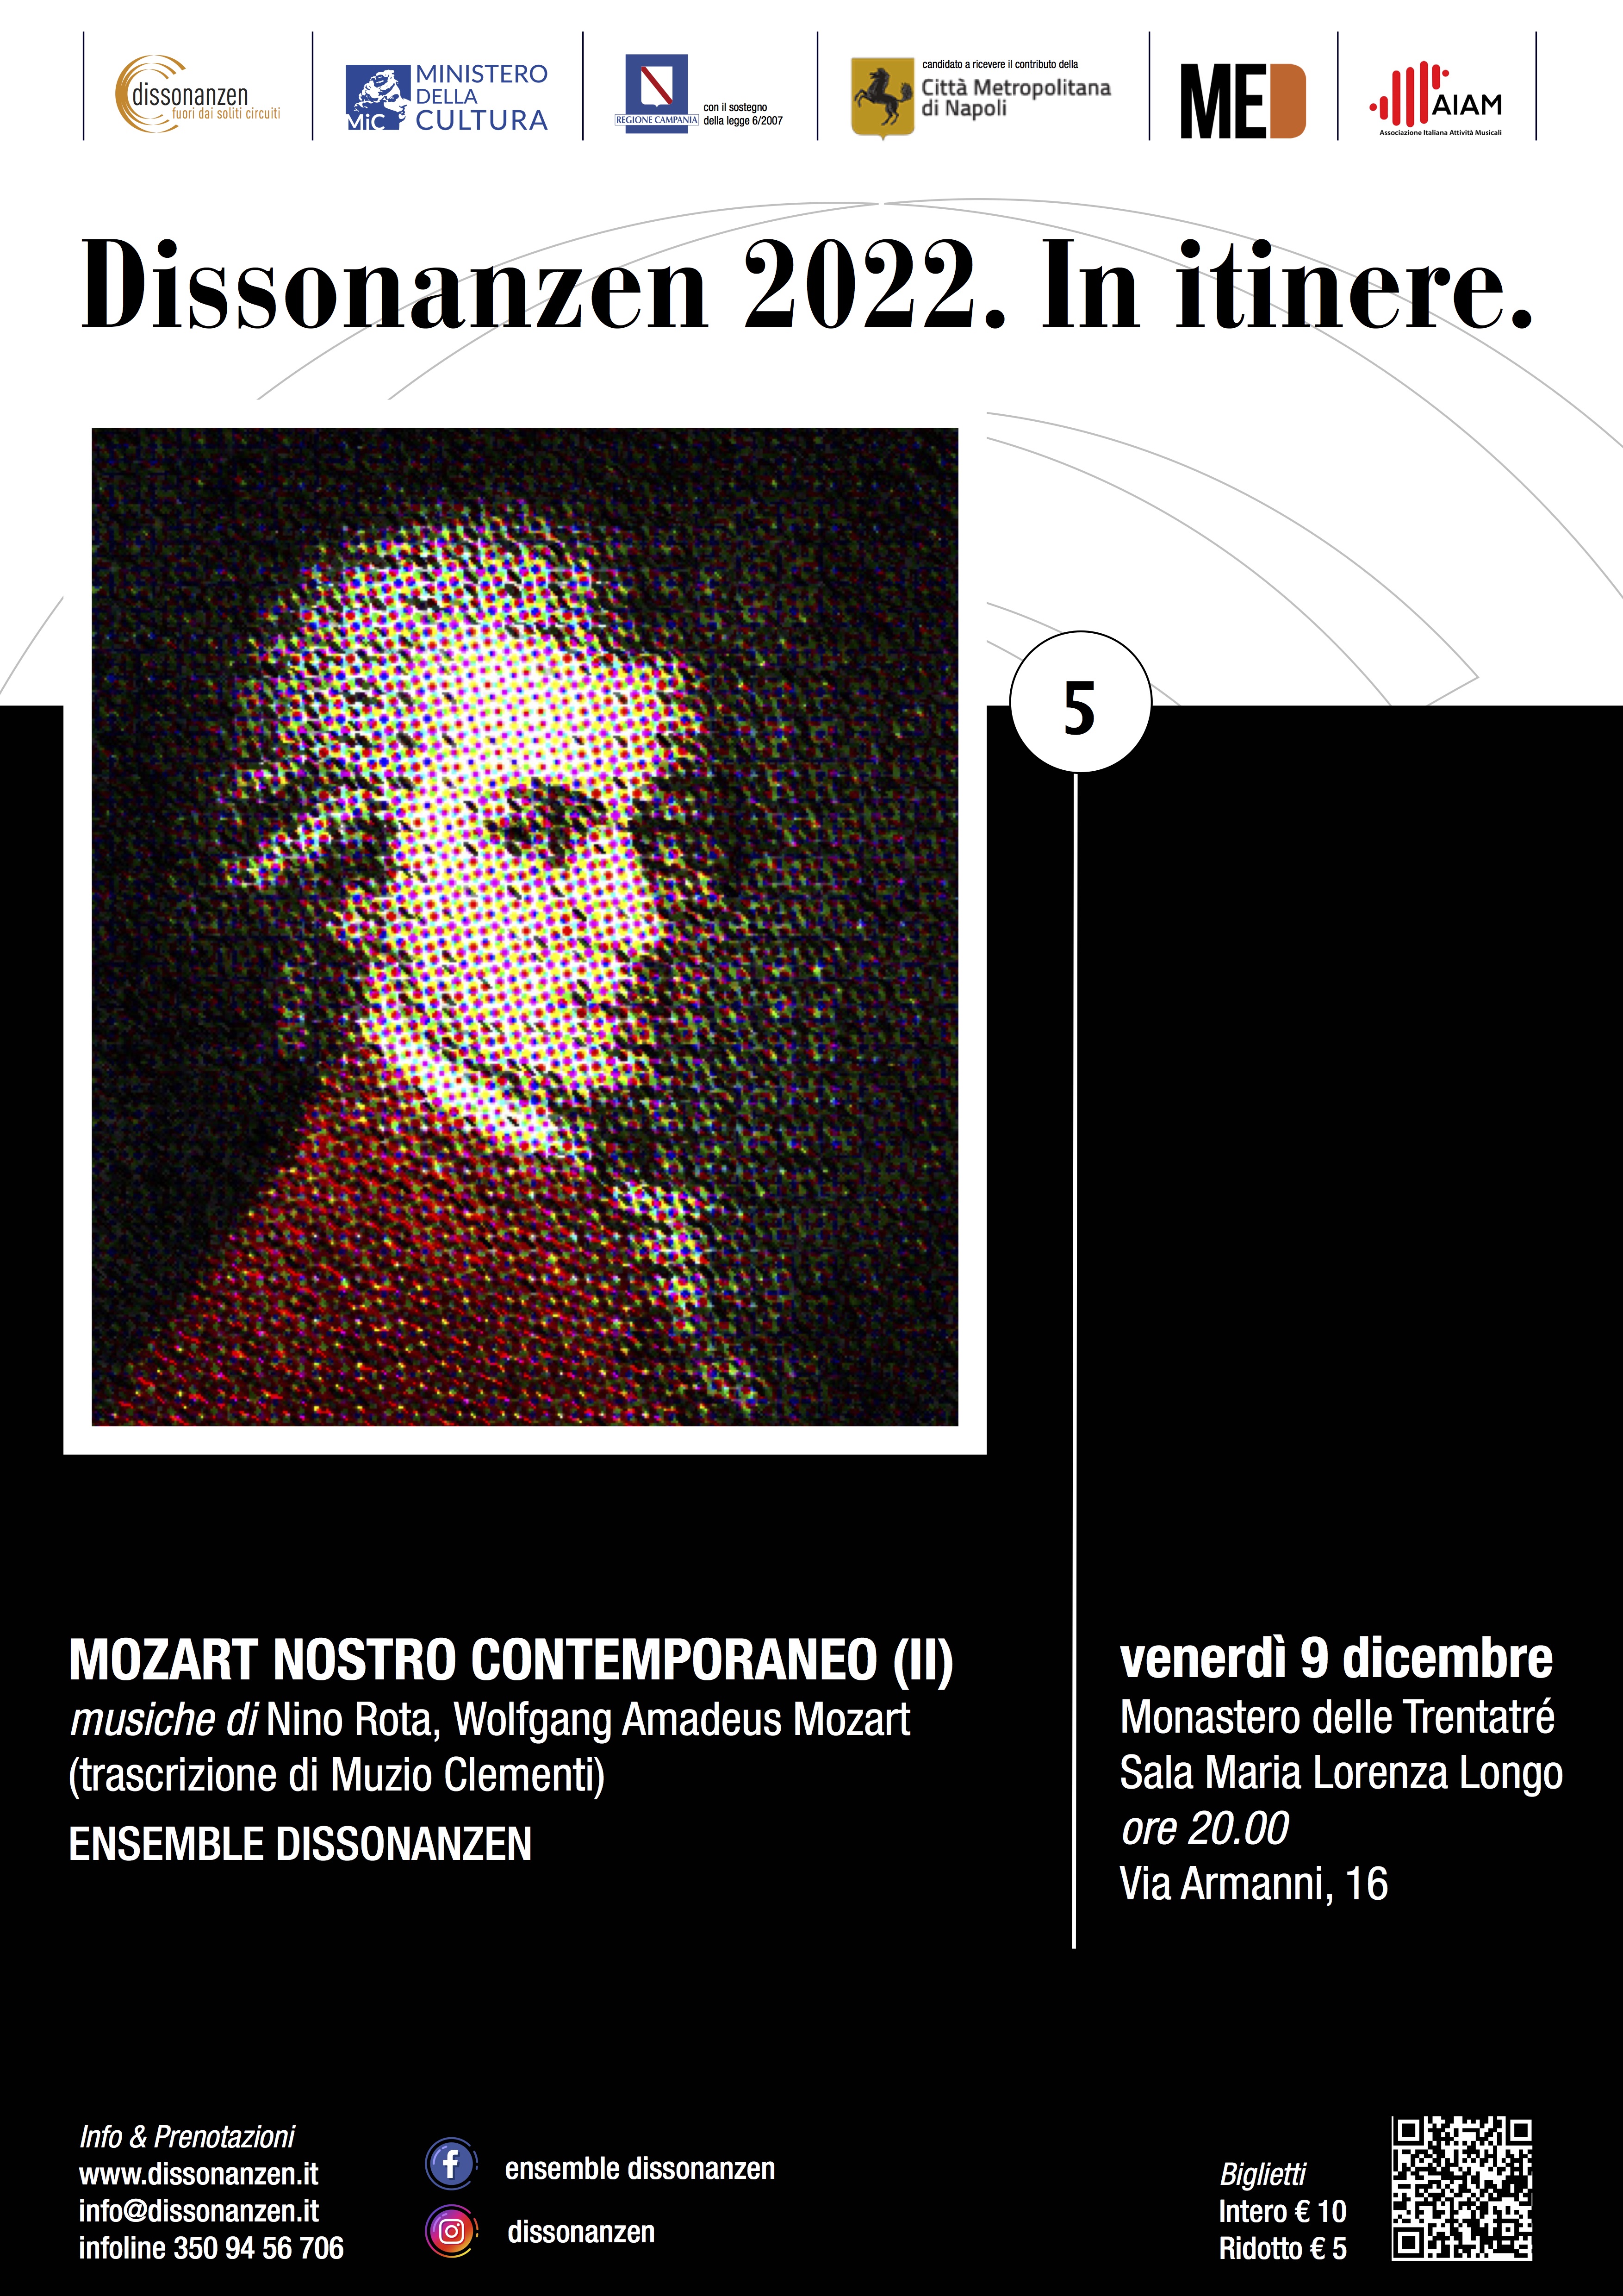 Mozart nostro contemporaneo II